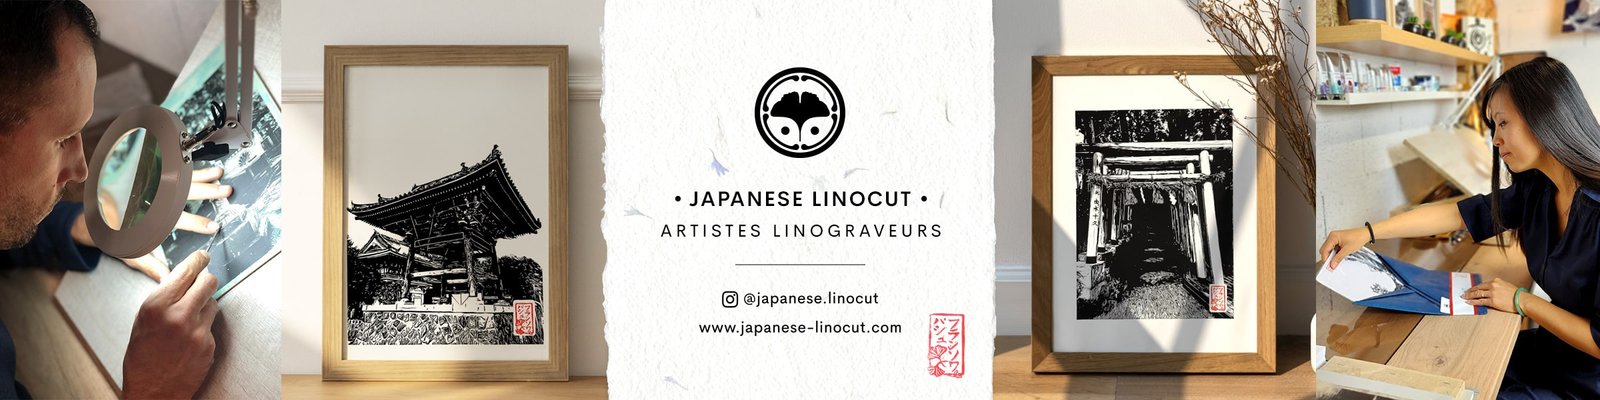 japanese linocut linogravure artisanale sur le Japon